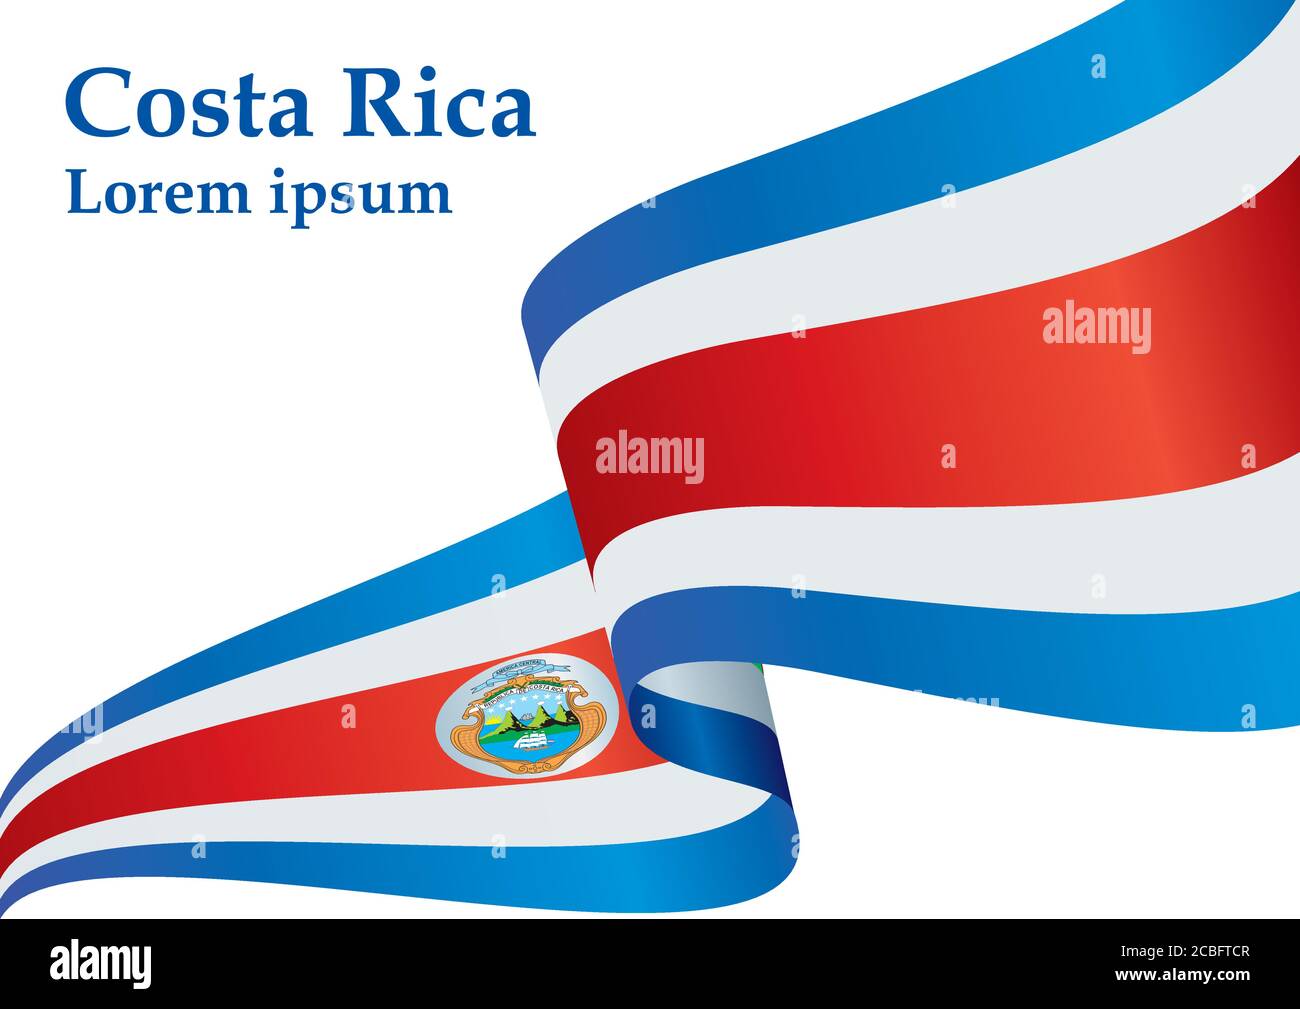 Flagge von Costa Rica, Republik Costa Rica. Vorlage für Award Design, ein offizielles Dokument mit der Flagge von Costa Rica. Stock Vektor